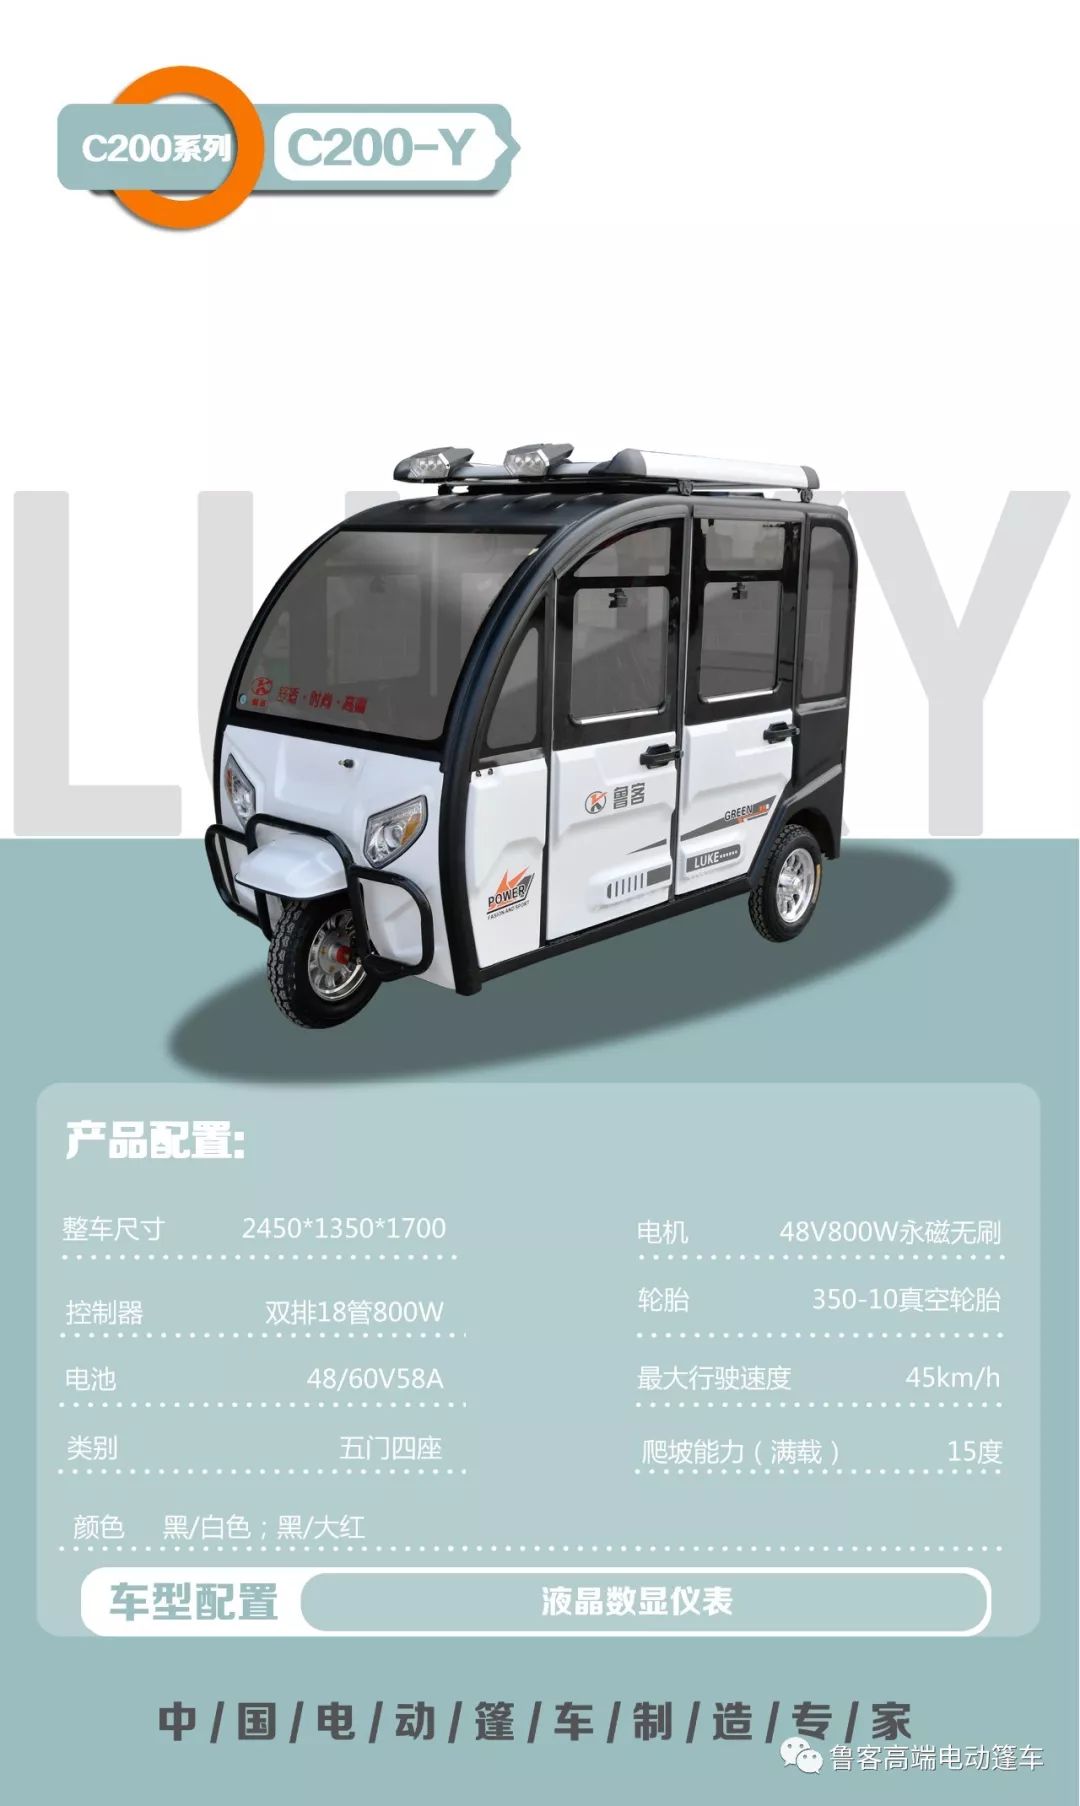 鲁客电动三轮篷车产品介绍—2020年3月